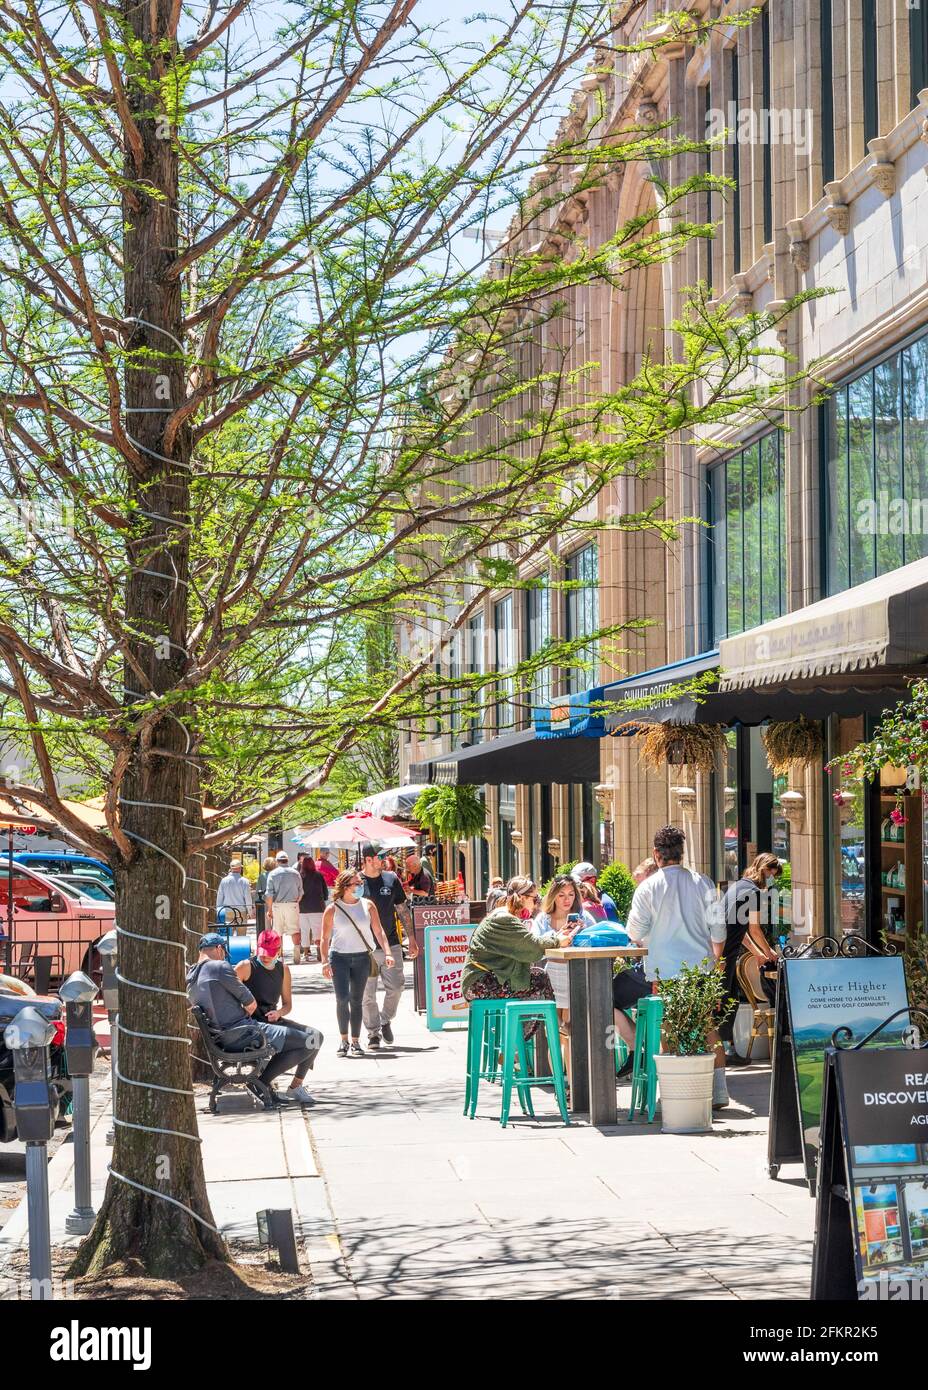 ASHEVILLE, NC, USA-1 MAI 2021 : Diners et acheteurs sur page Ave. Dans le centre-ville d'Asheville, le printemps est chaud et ensoleillé. Masques de protection contre les virus visibles. Banque D'Images